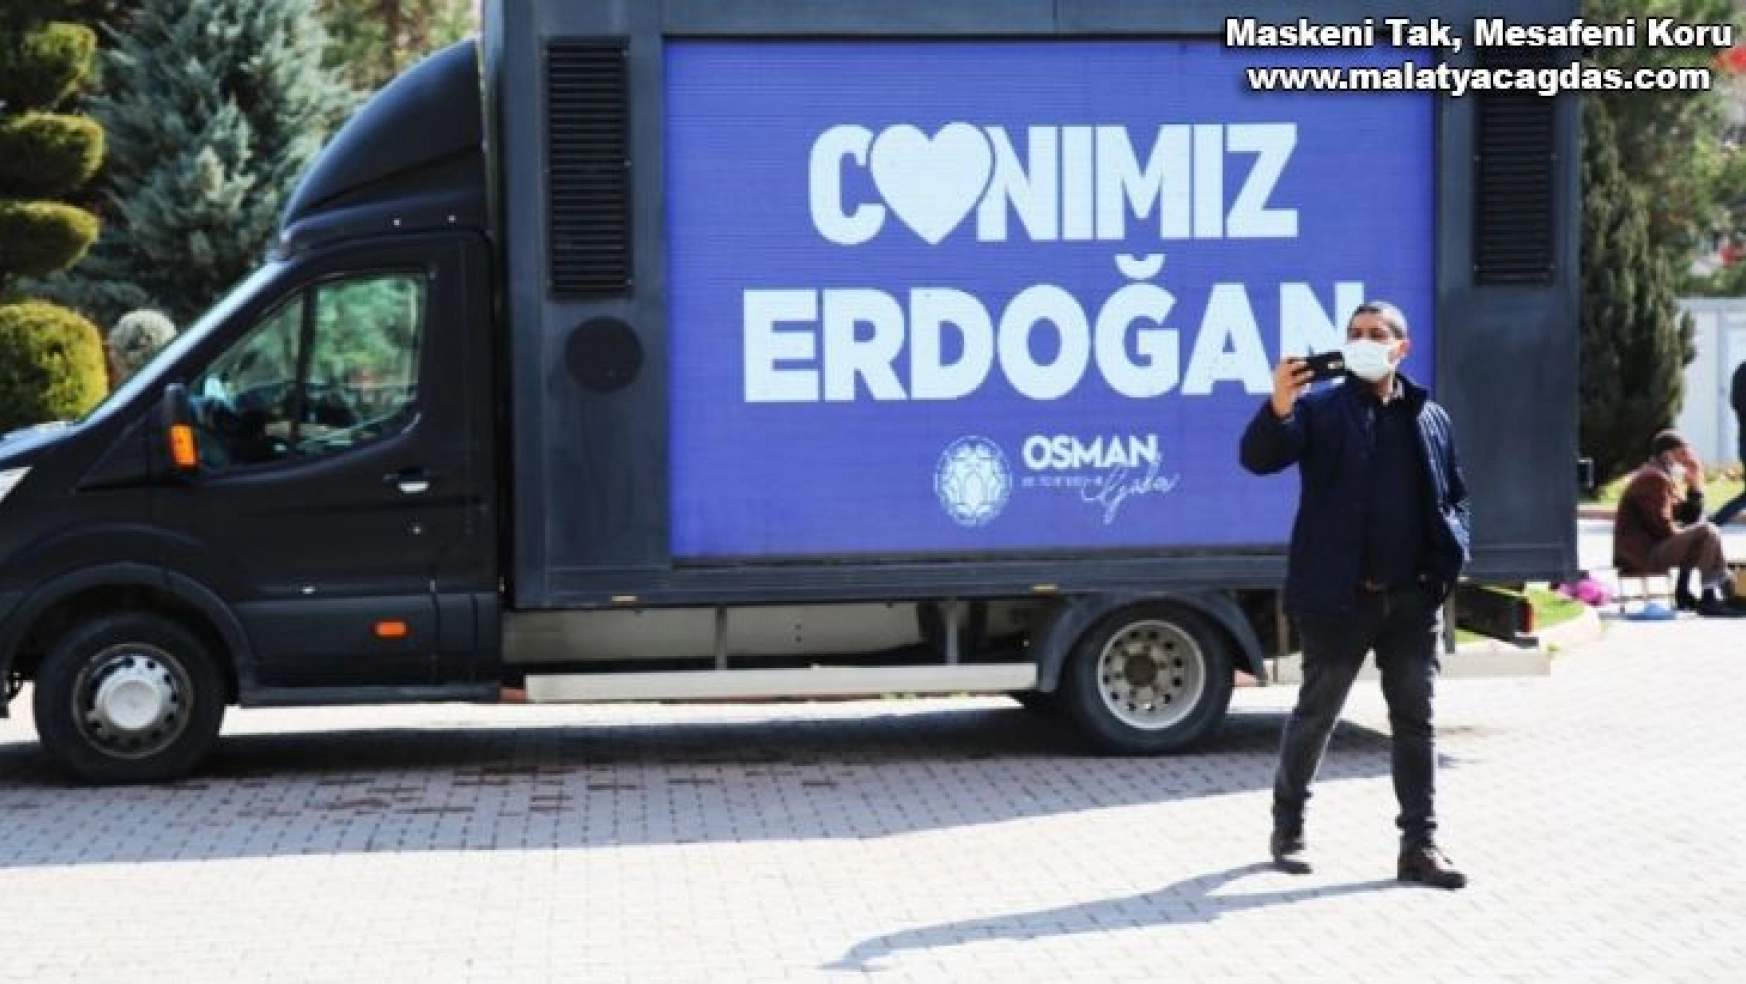 Battalgazi'de Canımız Erdoğan görseli büyük ilgi gördü